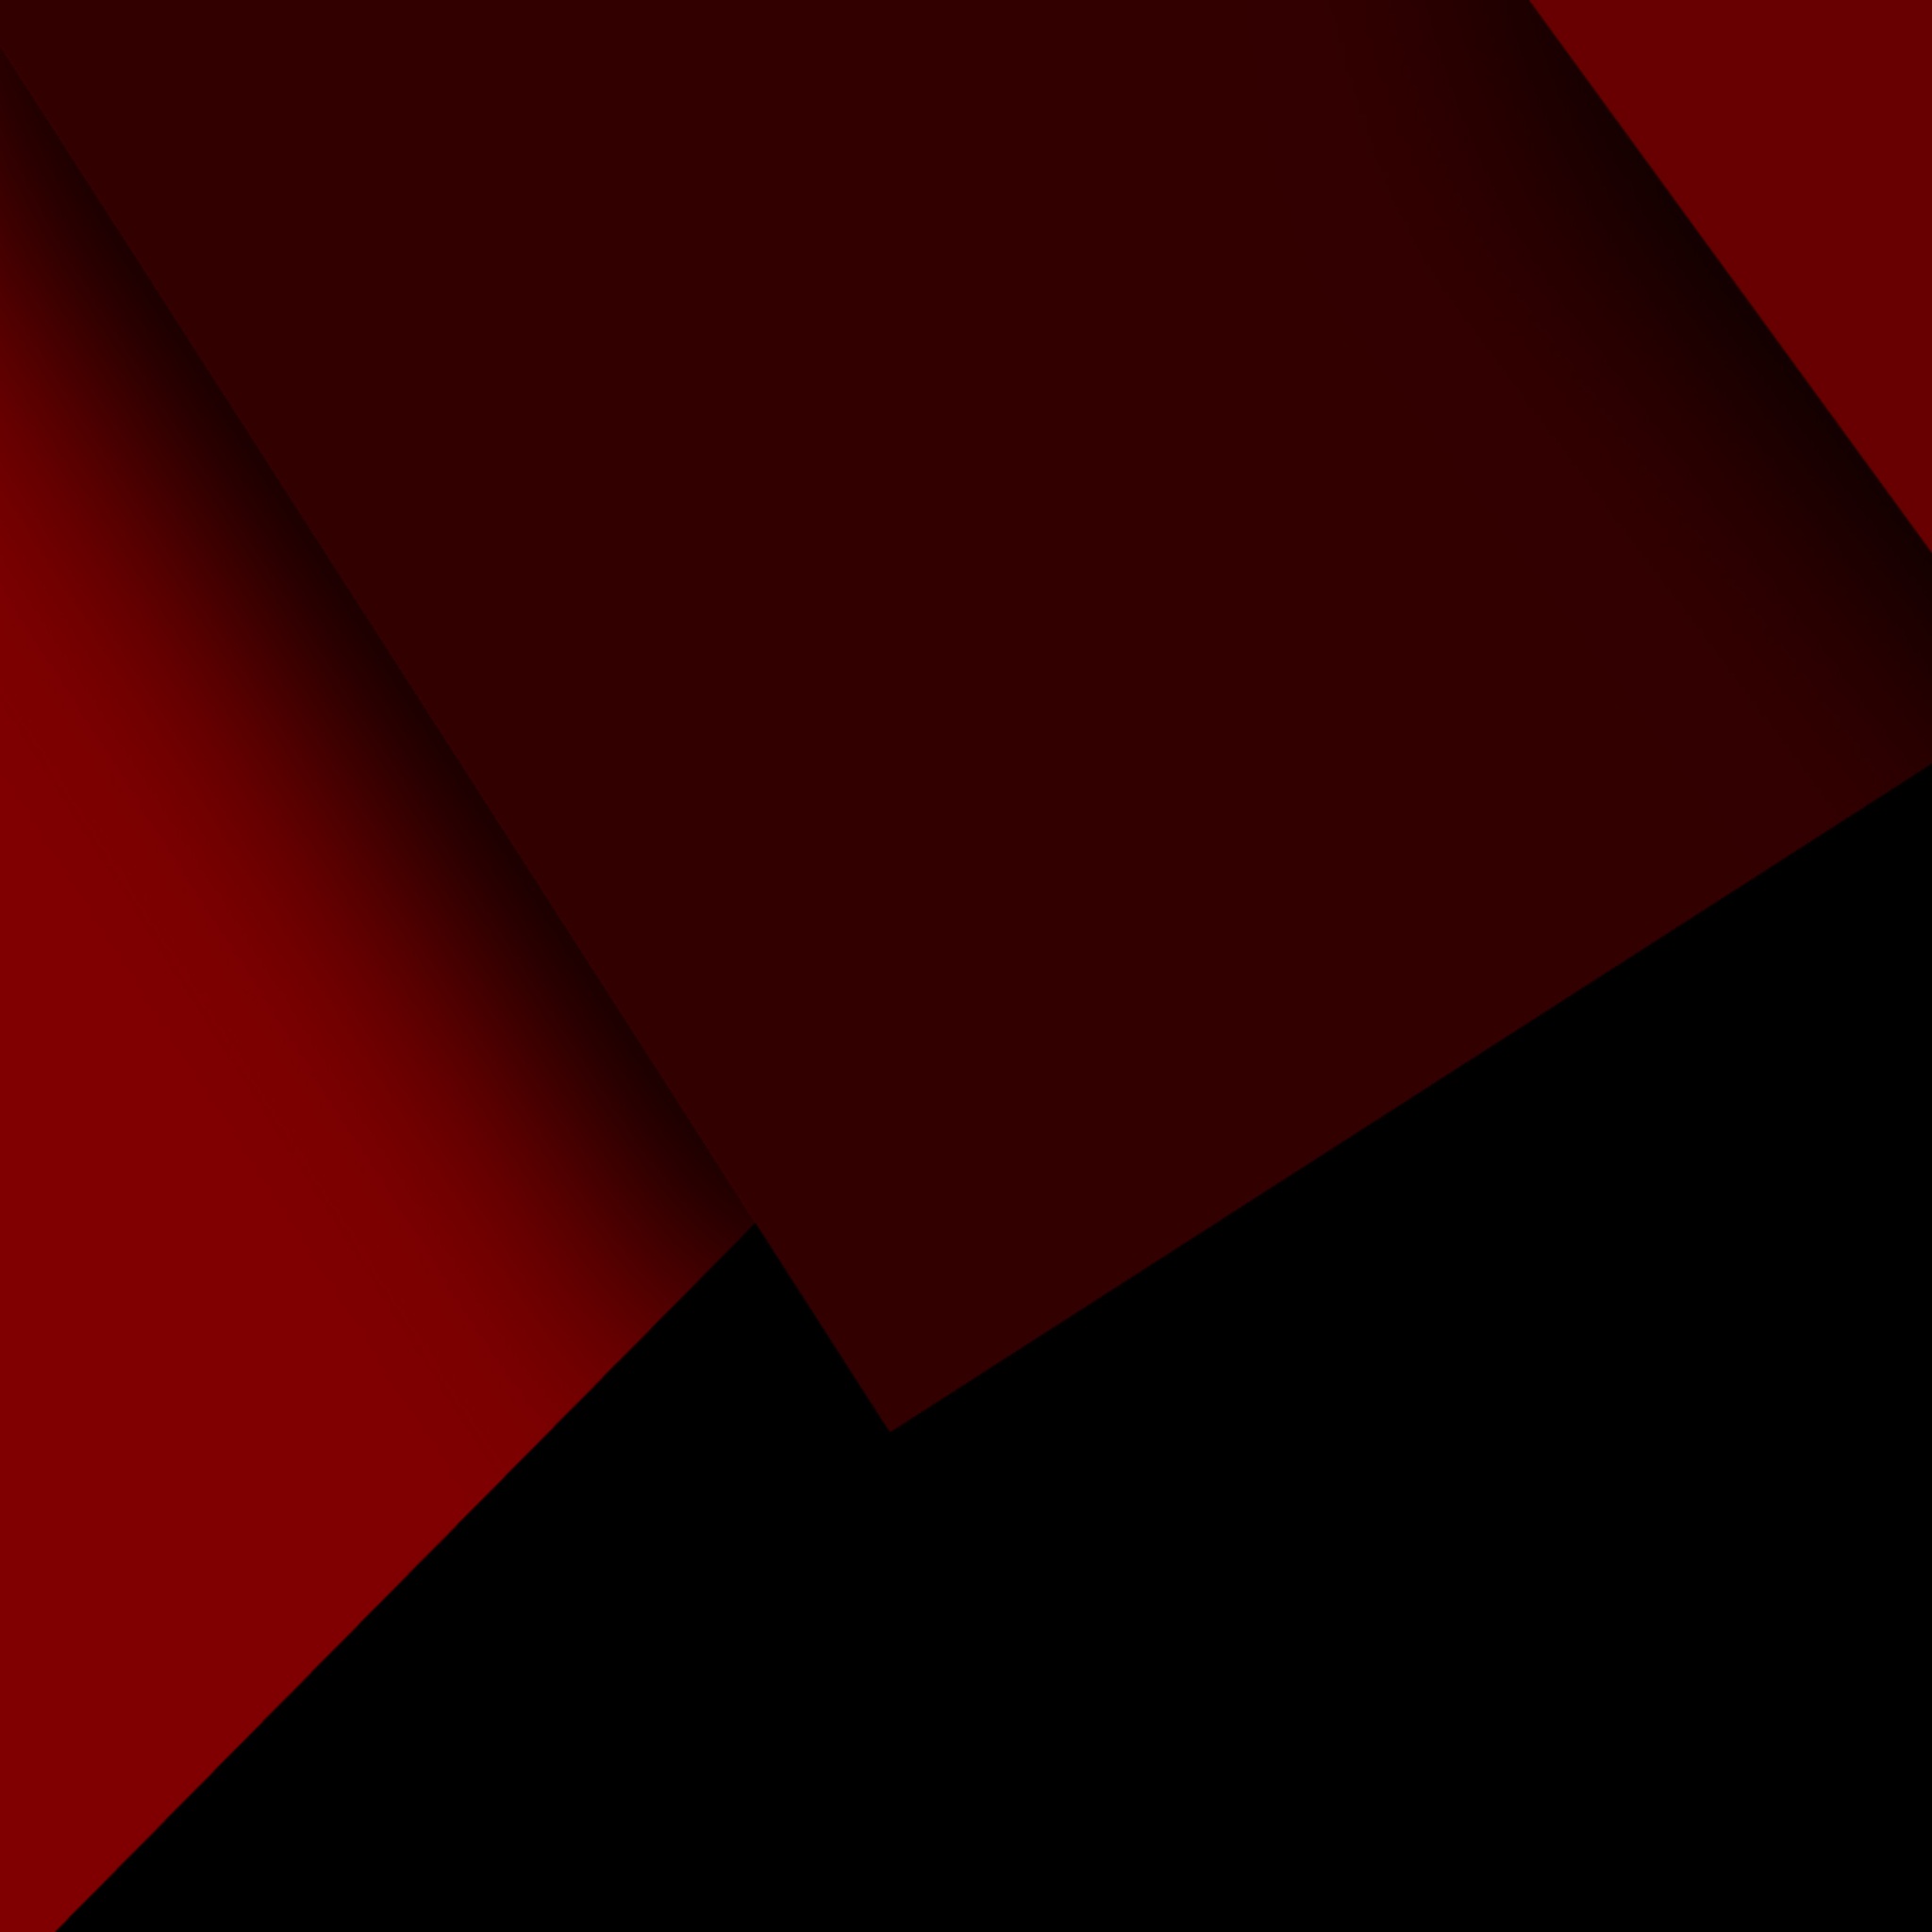 Wallpaper 4k Dark Red Black Abstract 4k Wallpaper